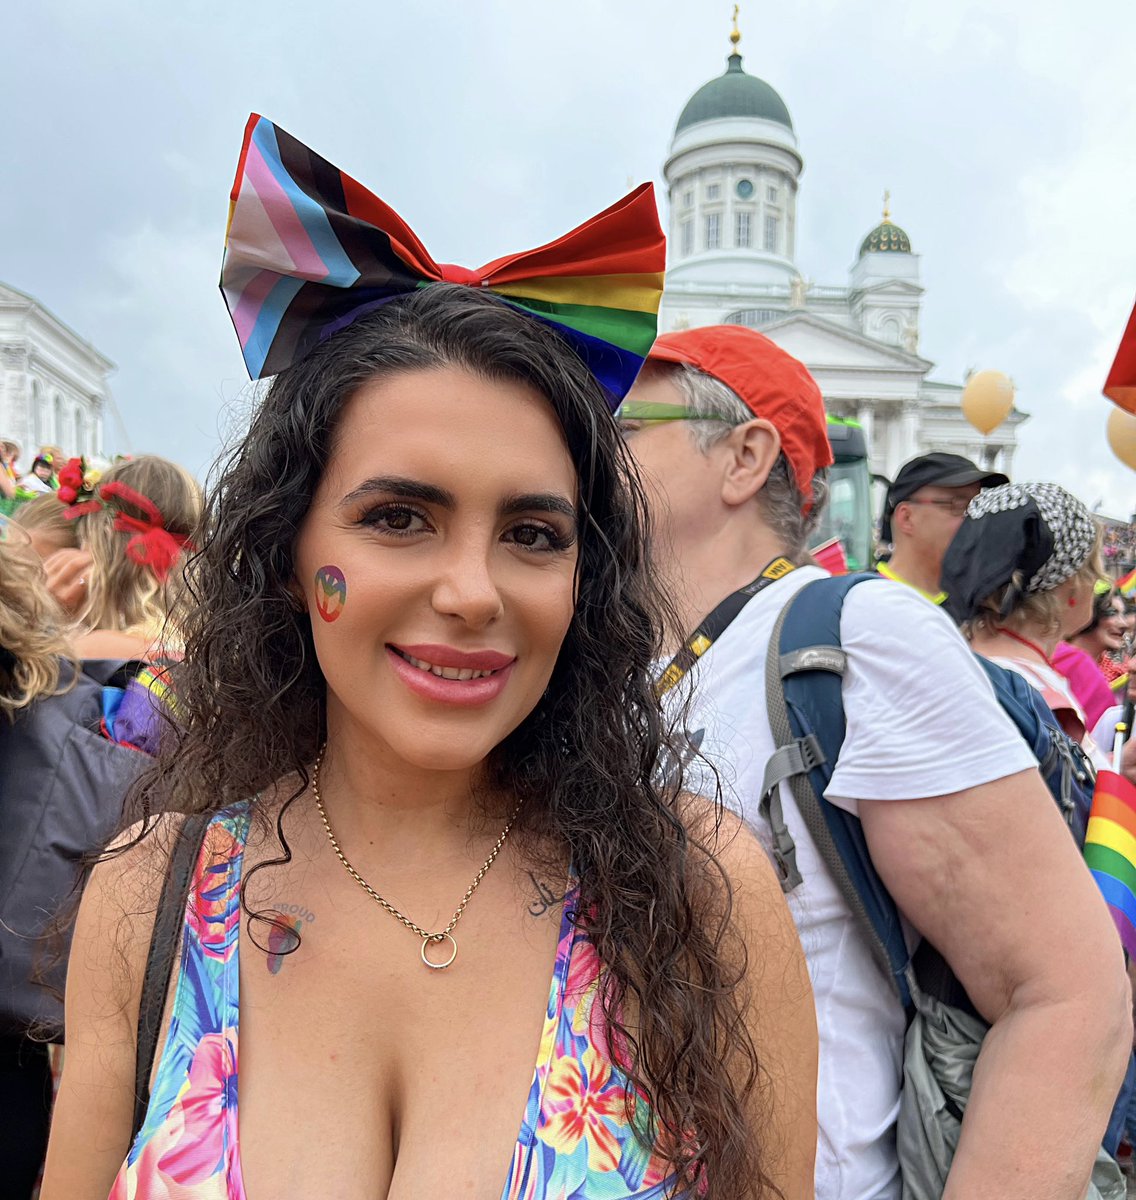 Ihanaa ja turvallista Pridea! 
Yhdistävä rakkaus on aina vahvempi kuin erottava pelko. ❤️🧡💛💚💙💜 
#Pride2023 #HelsinkiPride #ihmisoikeudet